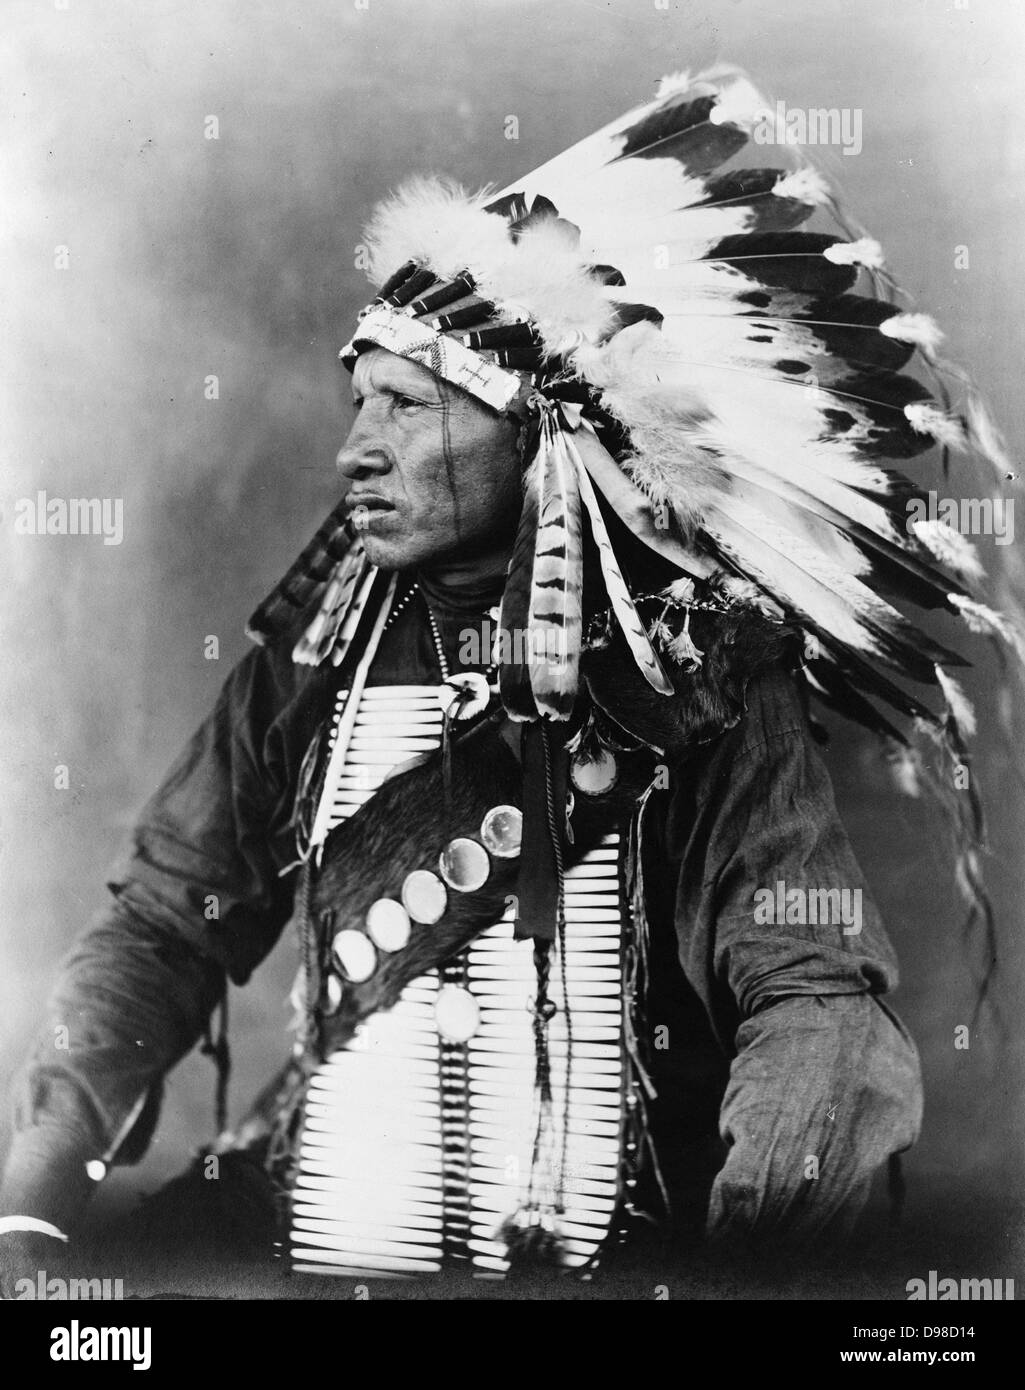 Roter Vogel, Sioux Indianer, Brustbild, Sitz, nach links, das Tragen von gefiederten Kopfschmuck, c 1908. Foto von John A. Johnson Stockfoto